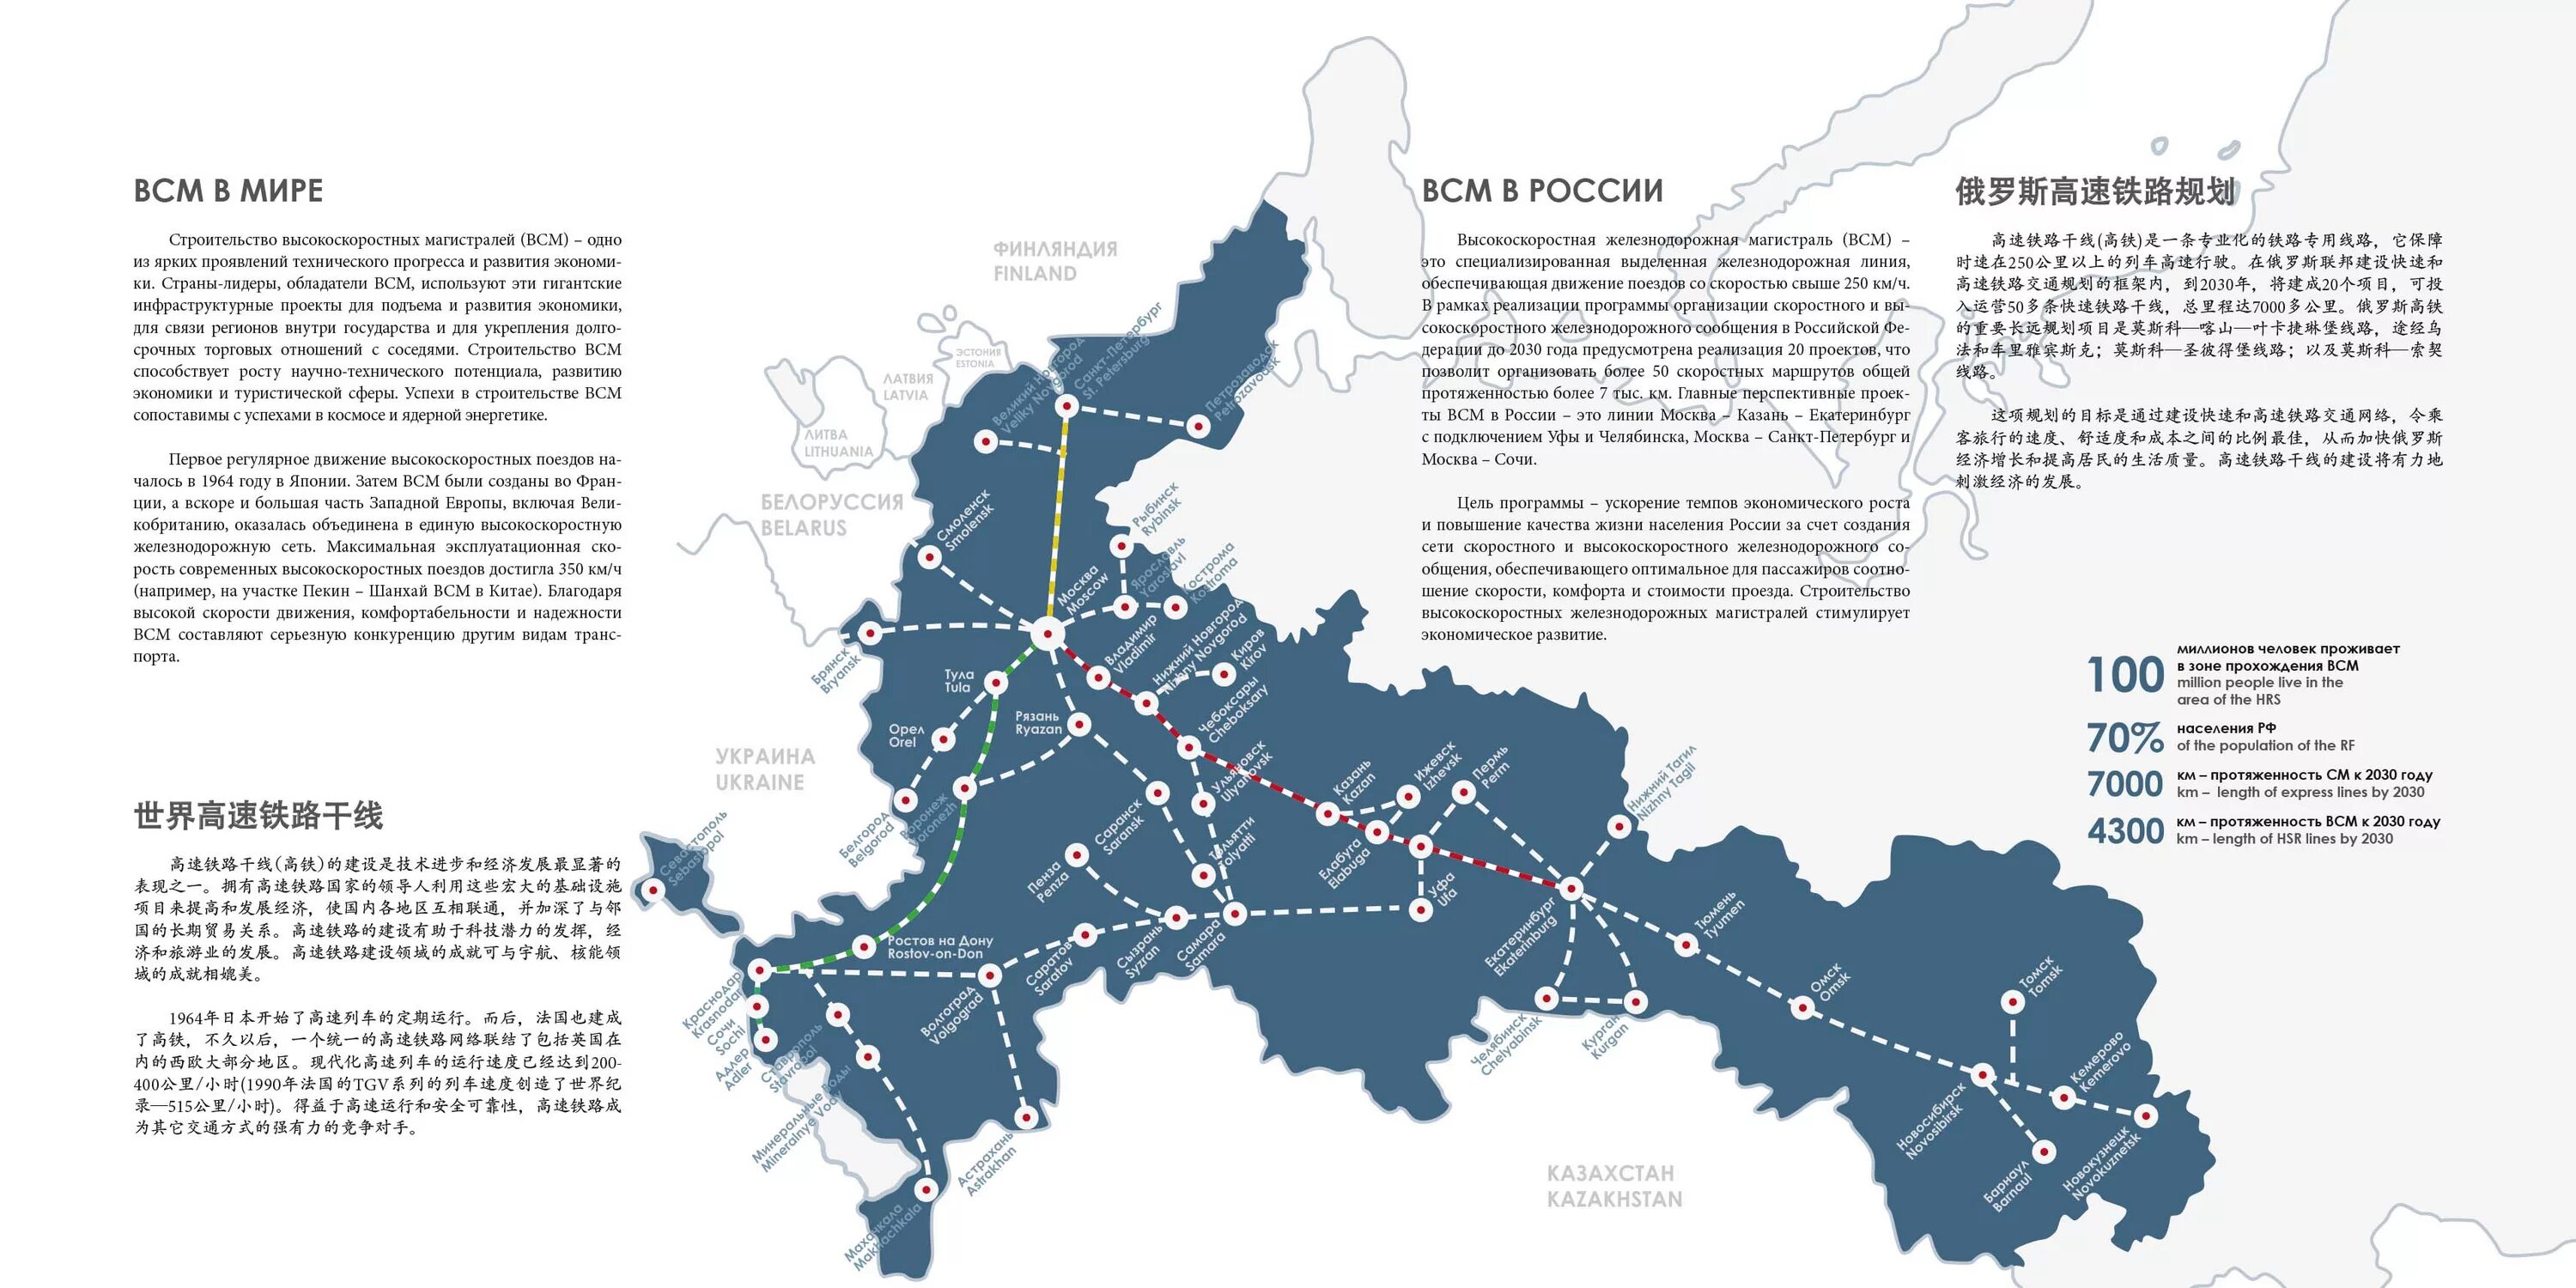 Всм на карте тверской области. Карта высокоскоростных магистралей в России. Сеть высокоскоростных железных дорог в России. Карта железных дорог России до 2030 года. План развития железных дорог России до 2030 года карта.